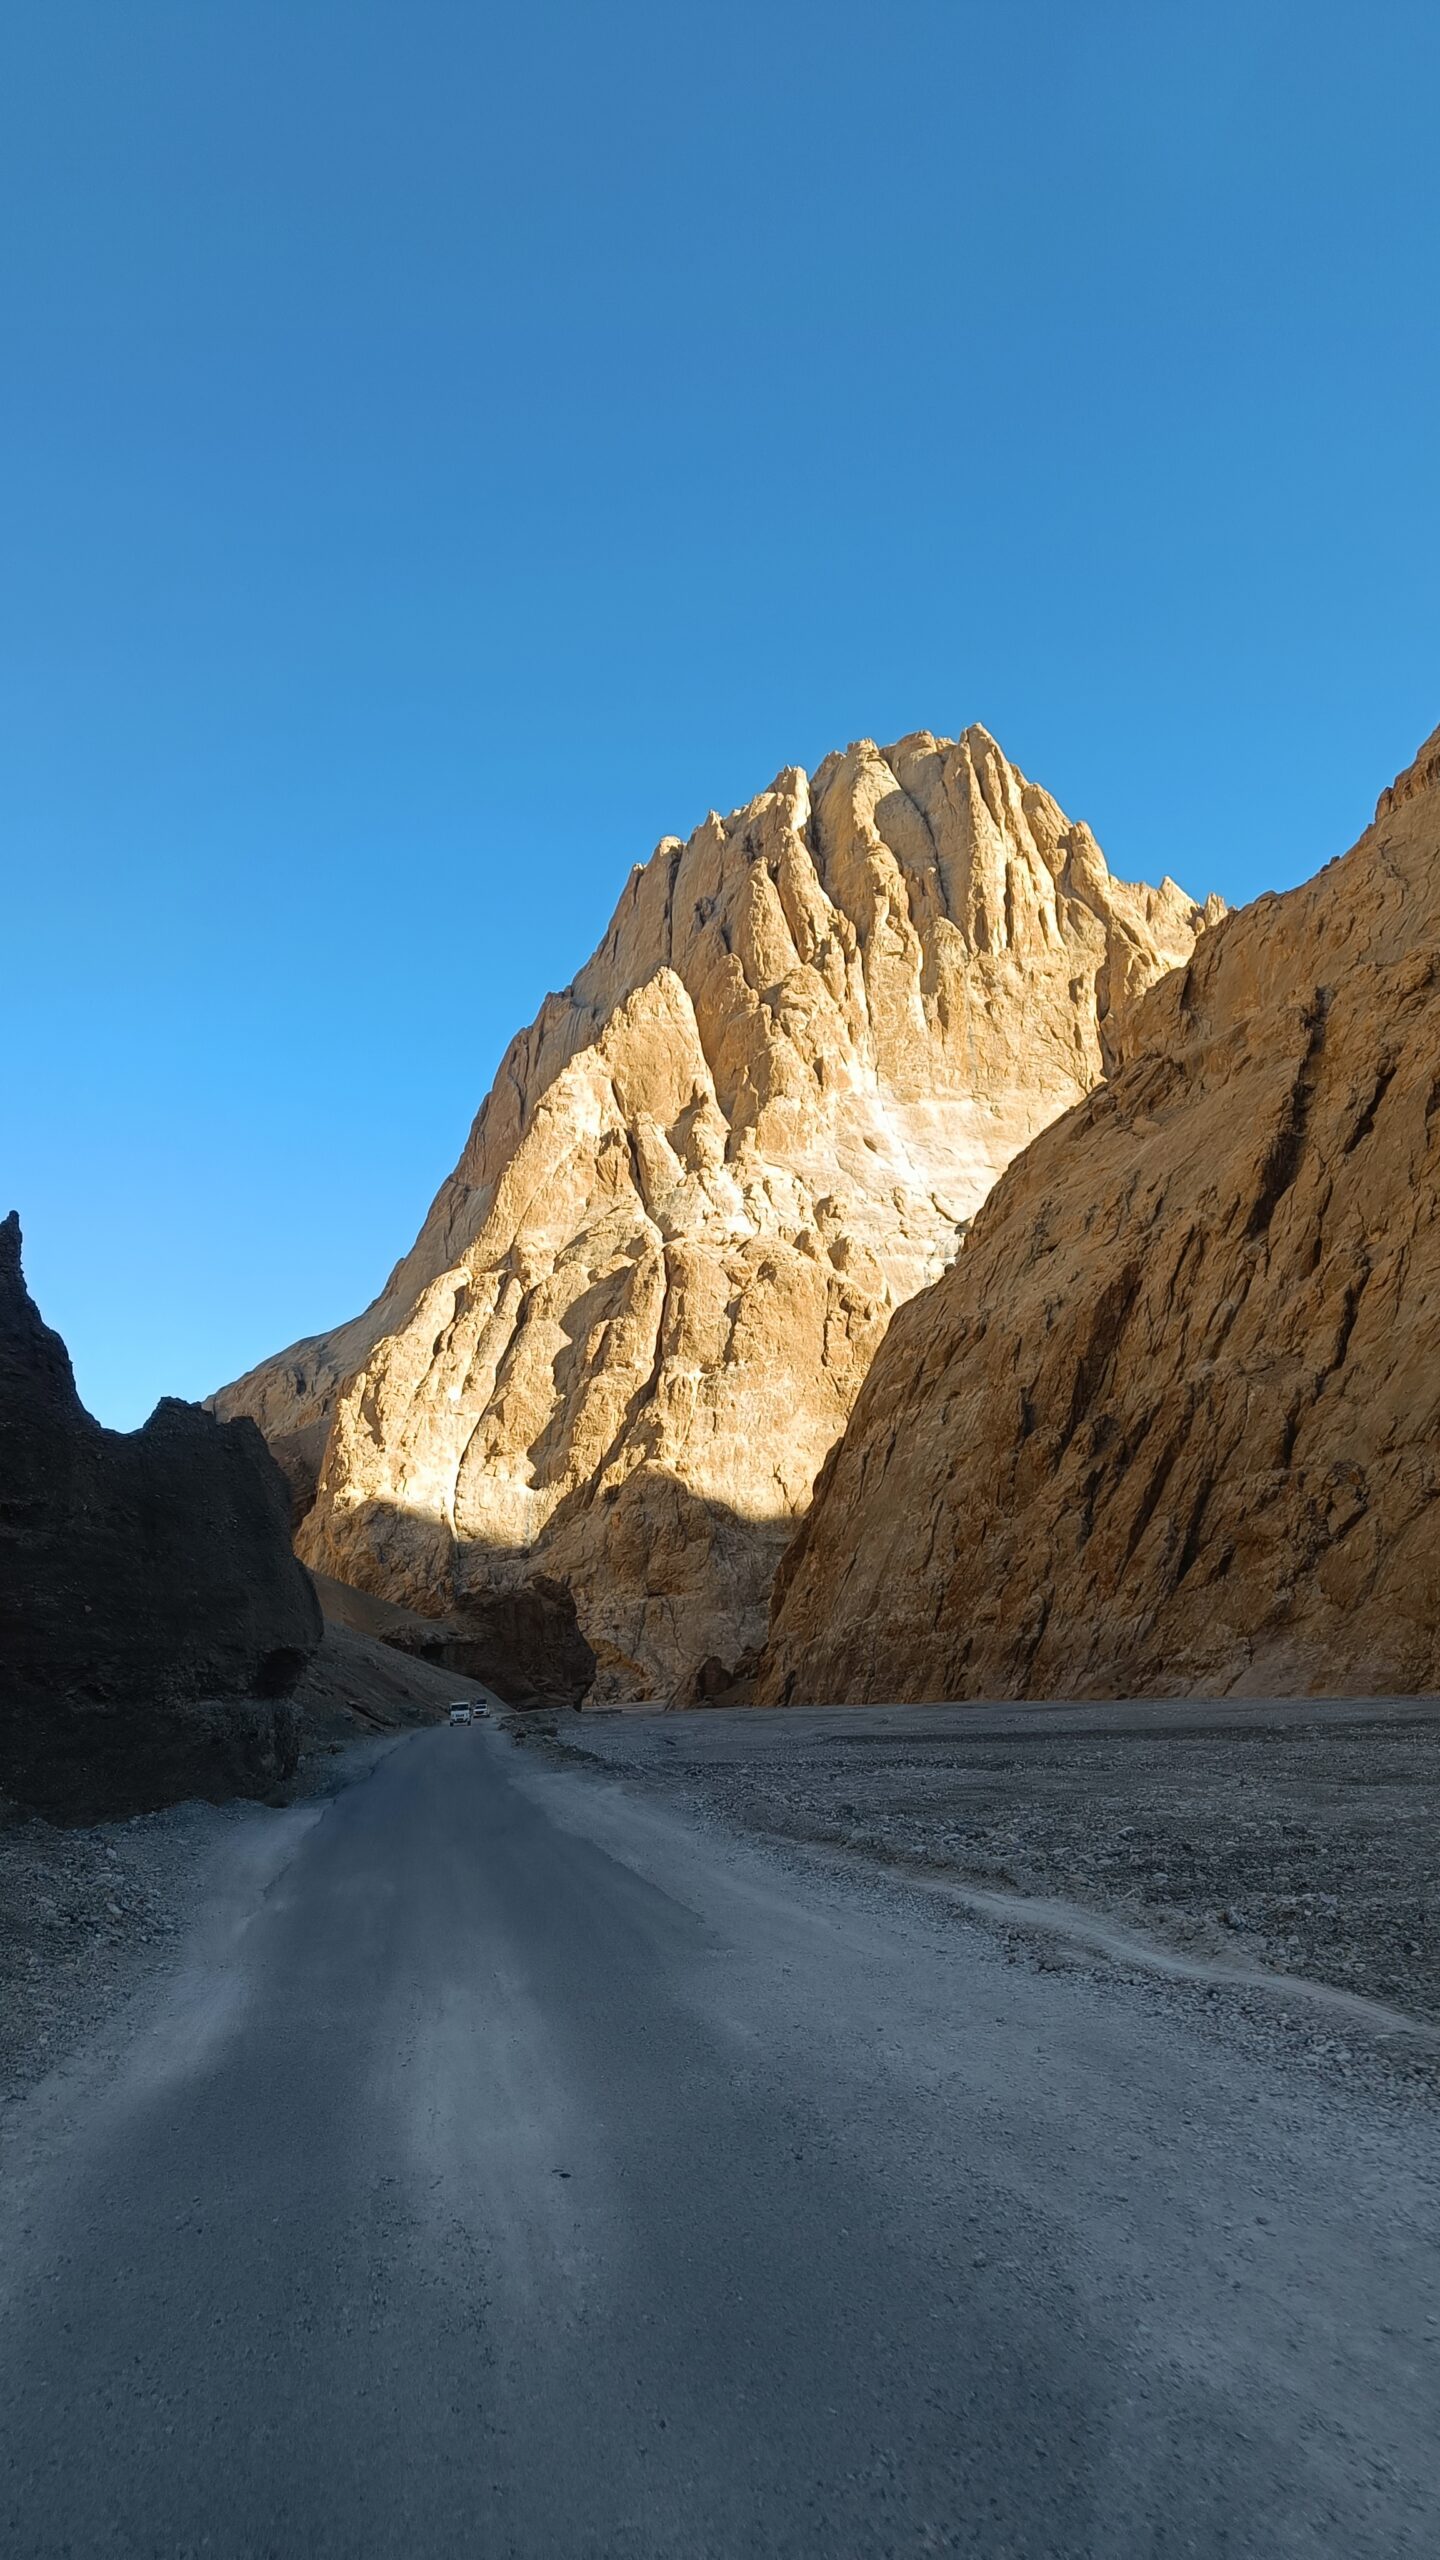 Road in Ladakh